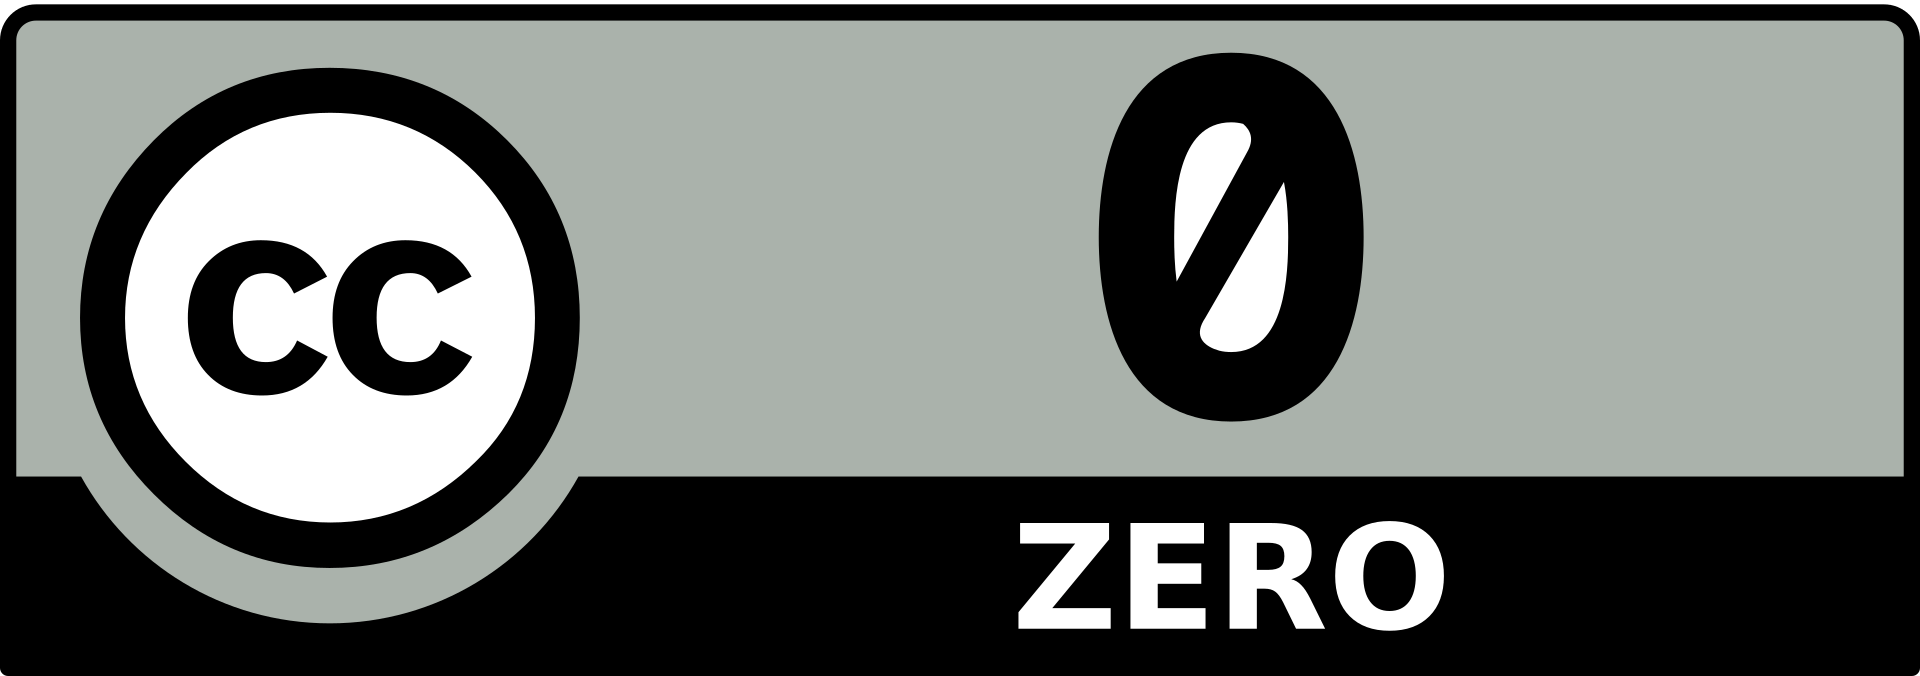 CC_Zero_badge